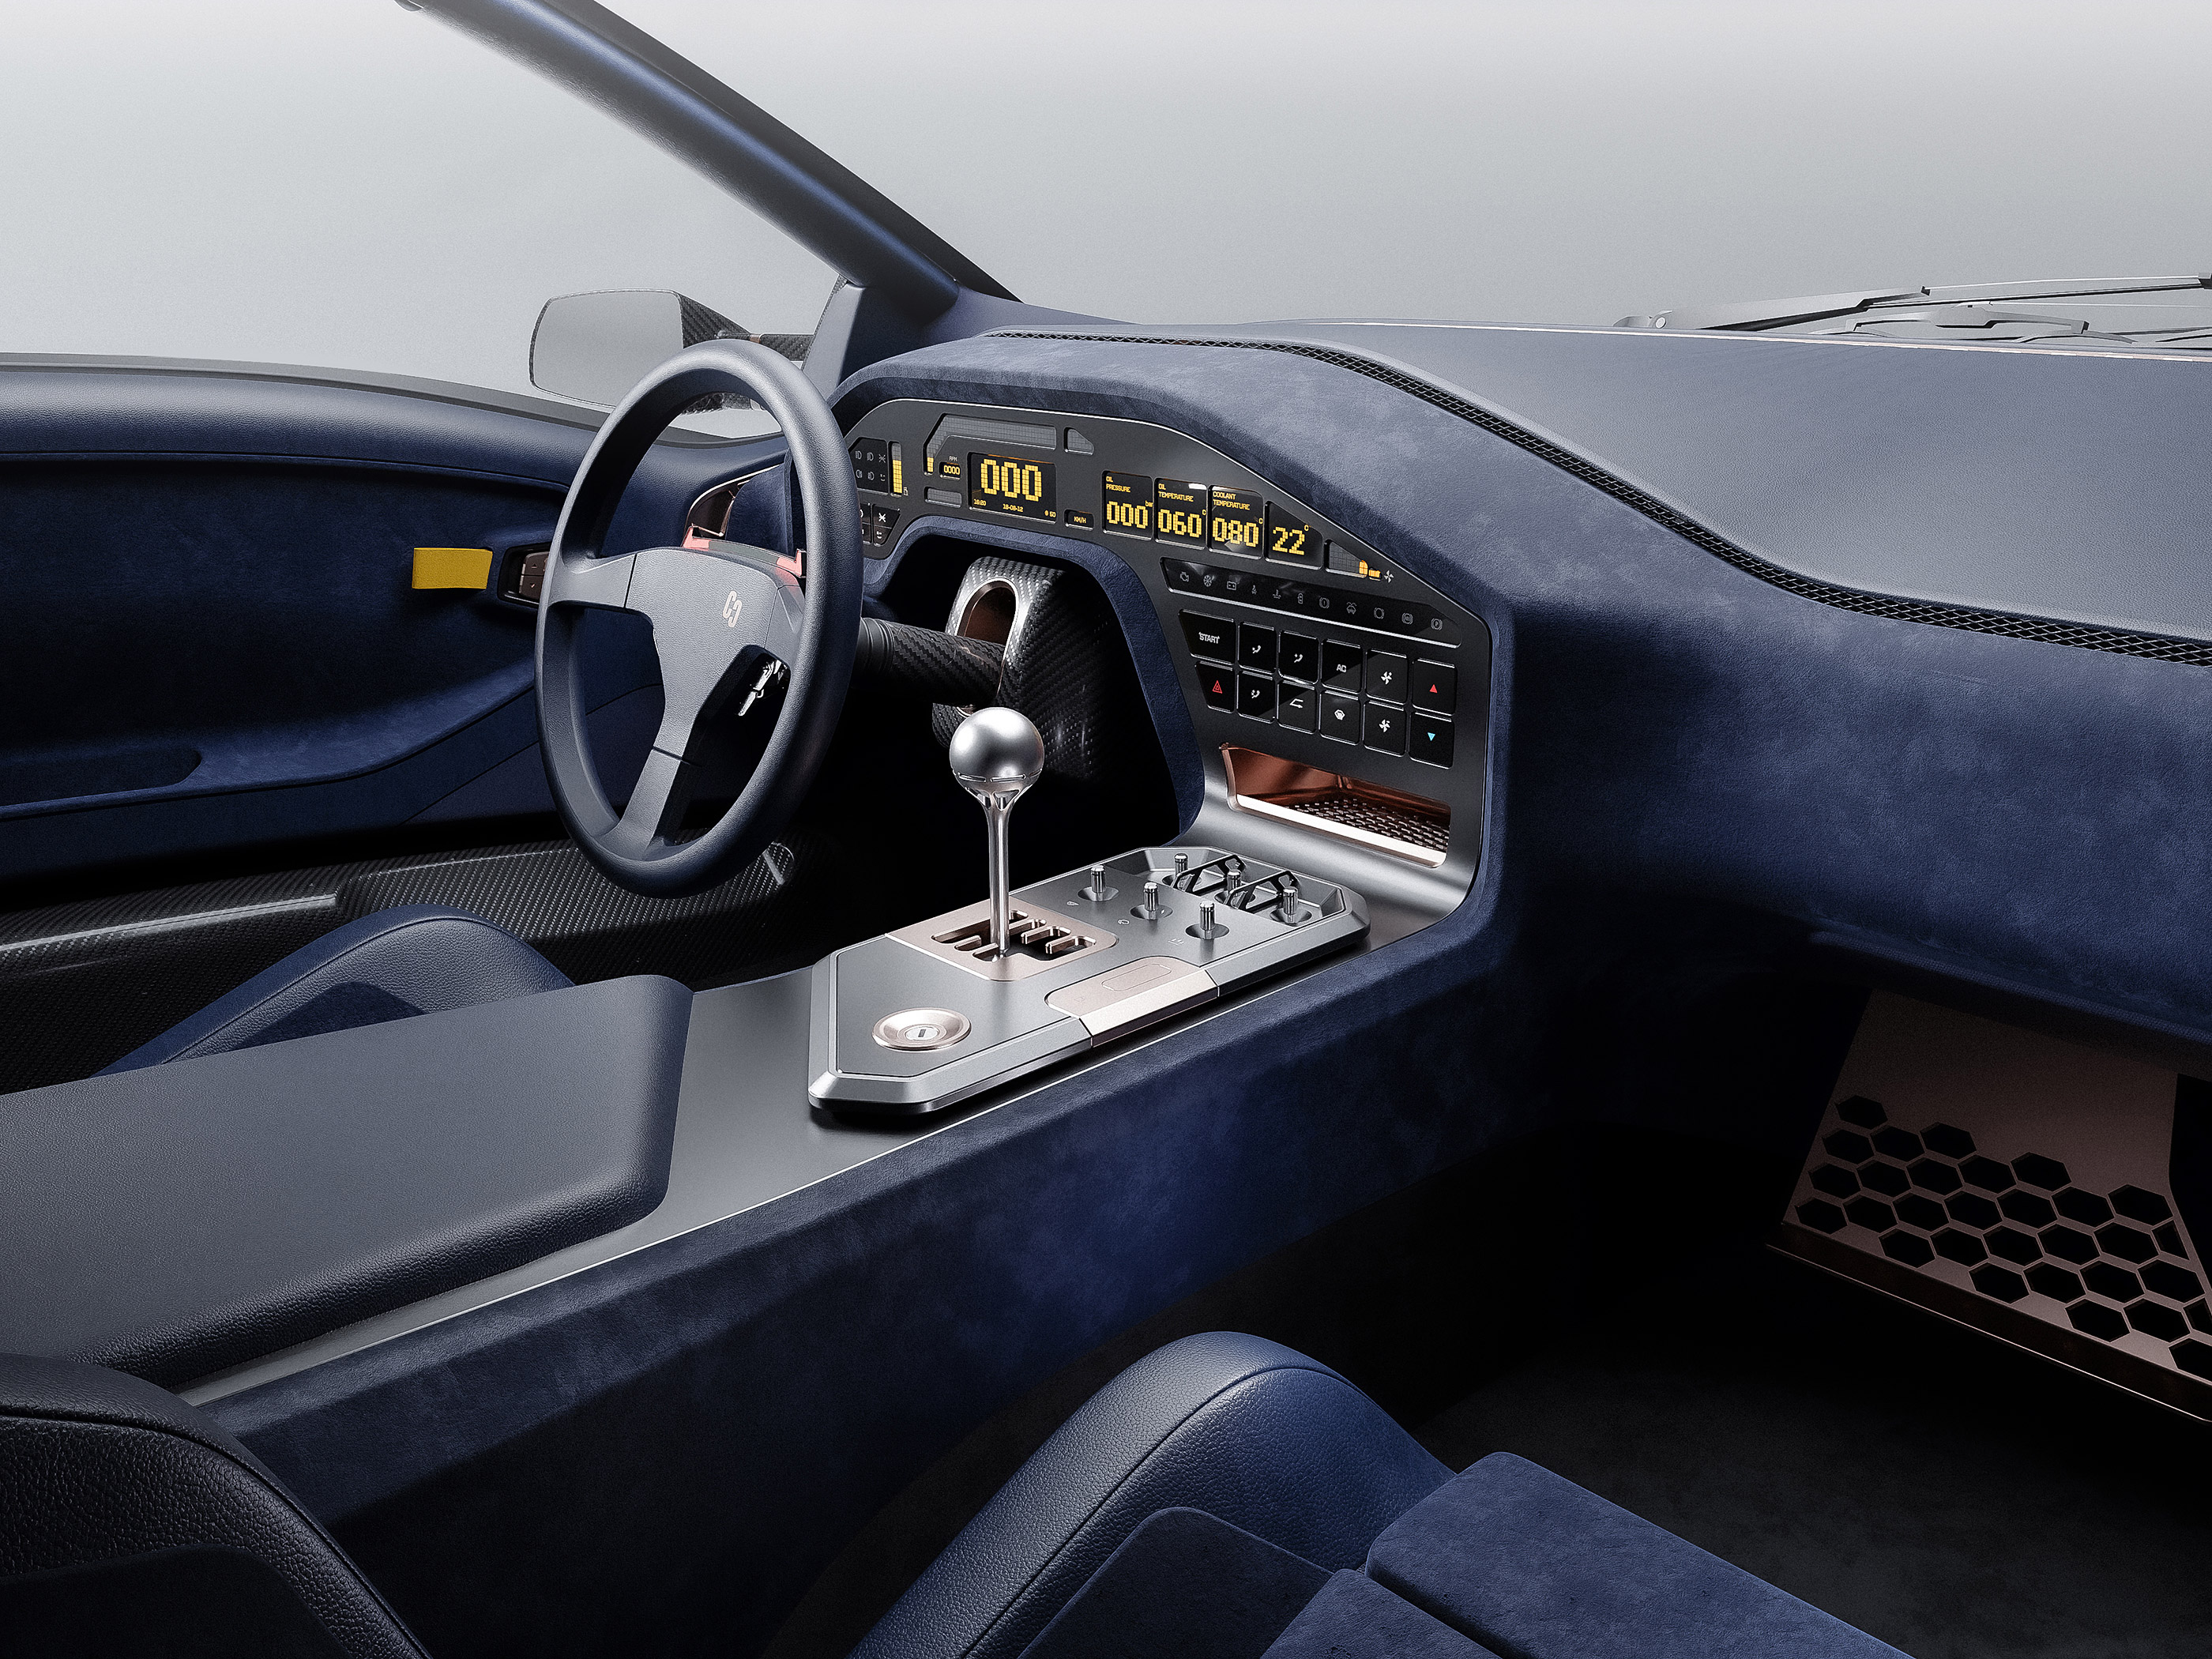  2023 Eccentrica Lamborghini Diablo Restomod Wallpaper.